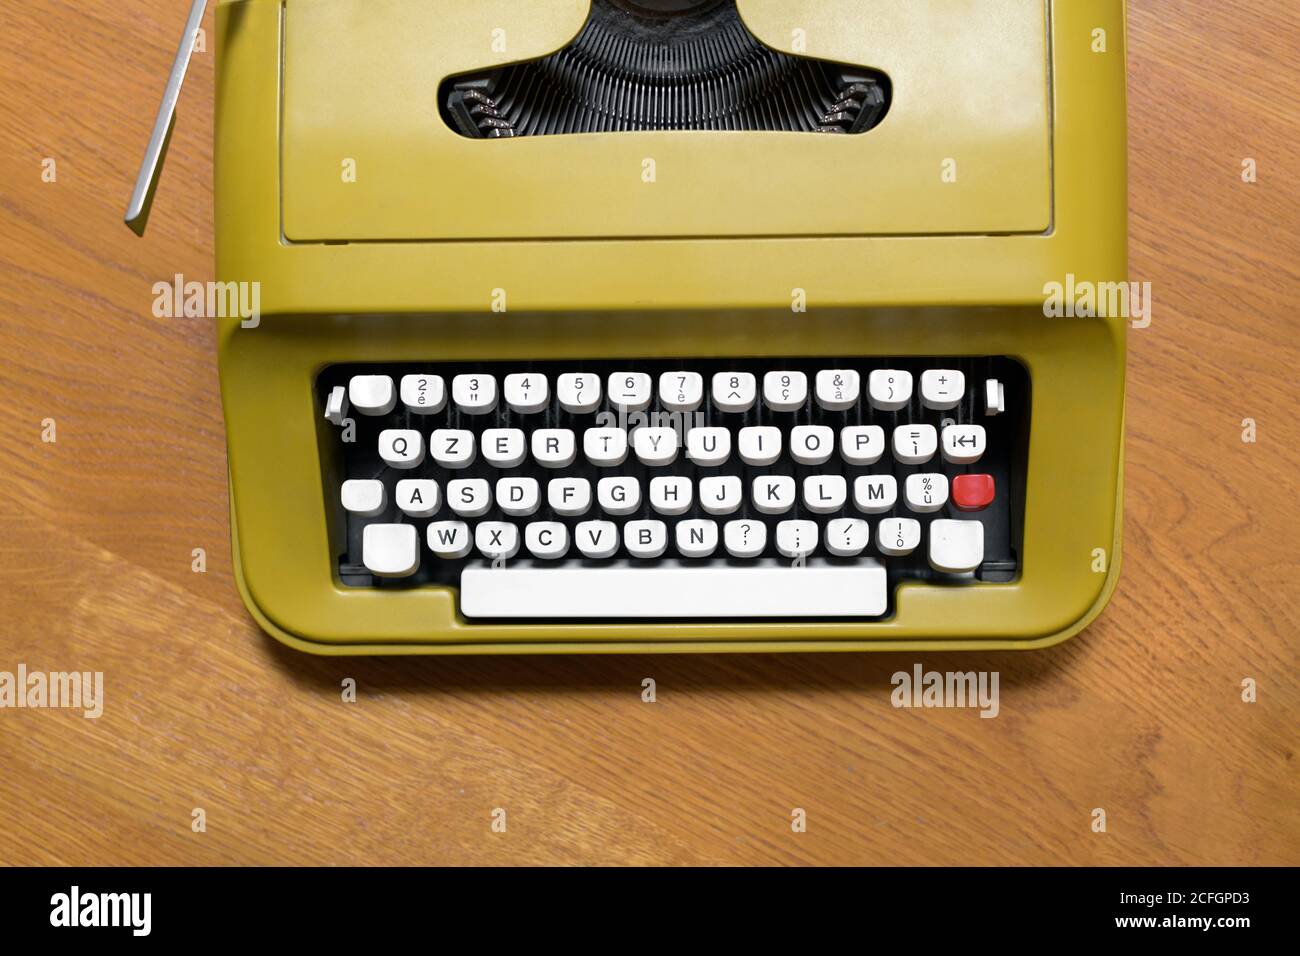 Vue de haut en bas sur le clavier alphanumérique d'un ancien machine à écrire rétro sur un bureau en bois dans une communication ou concept d'entreprise Banque D'Images